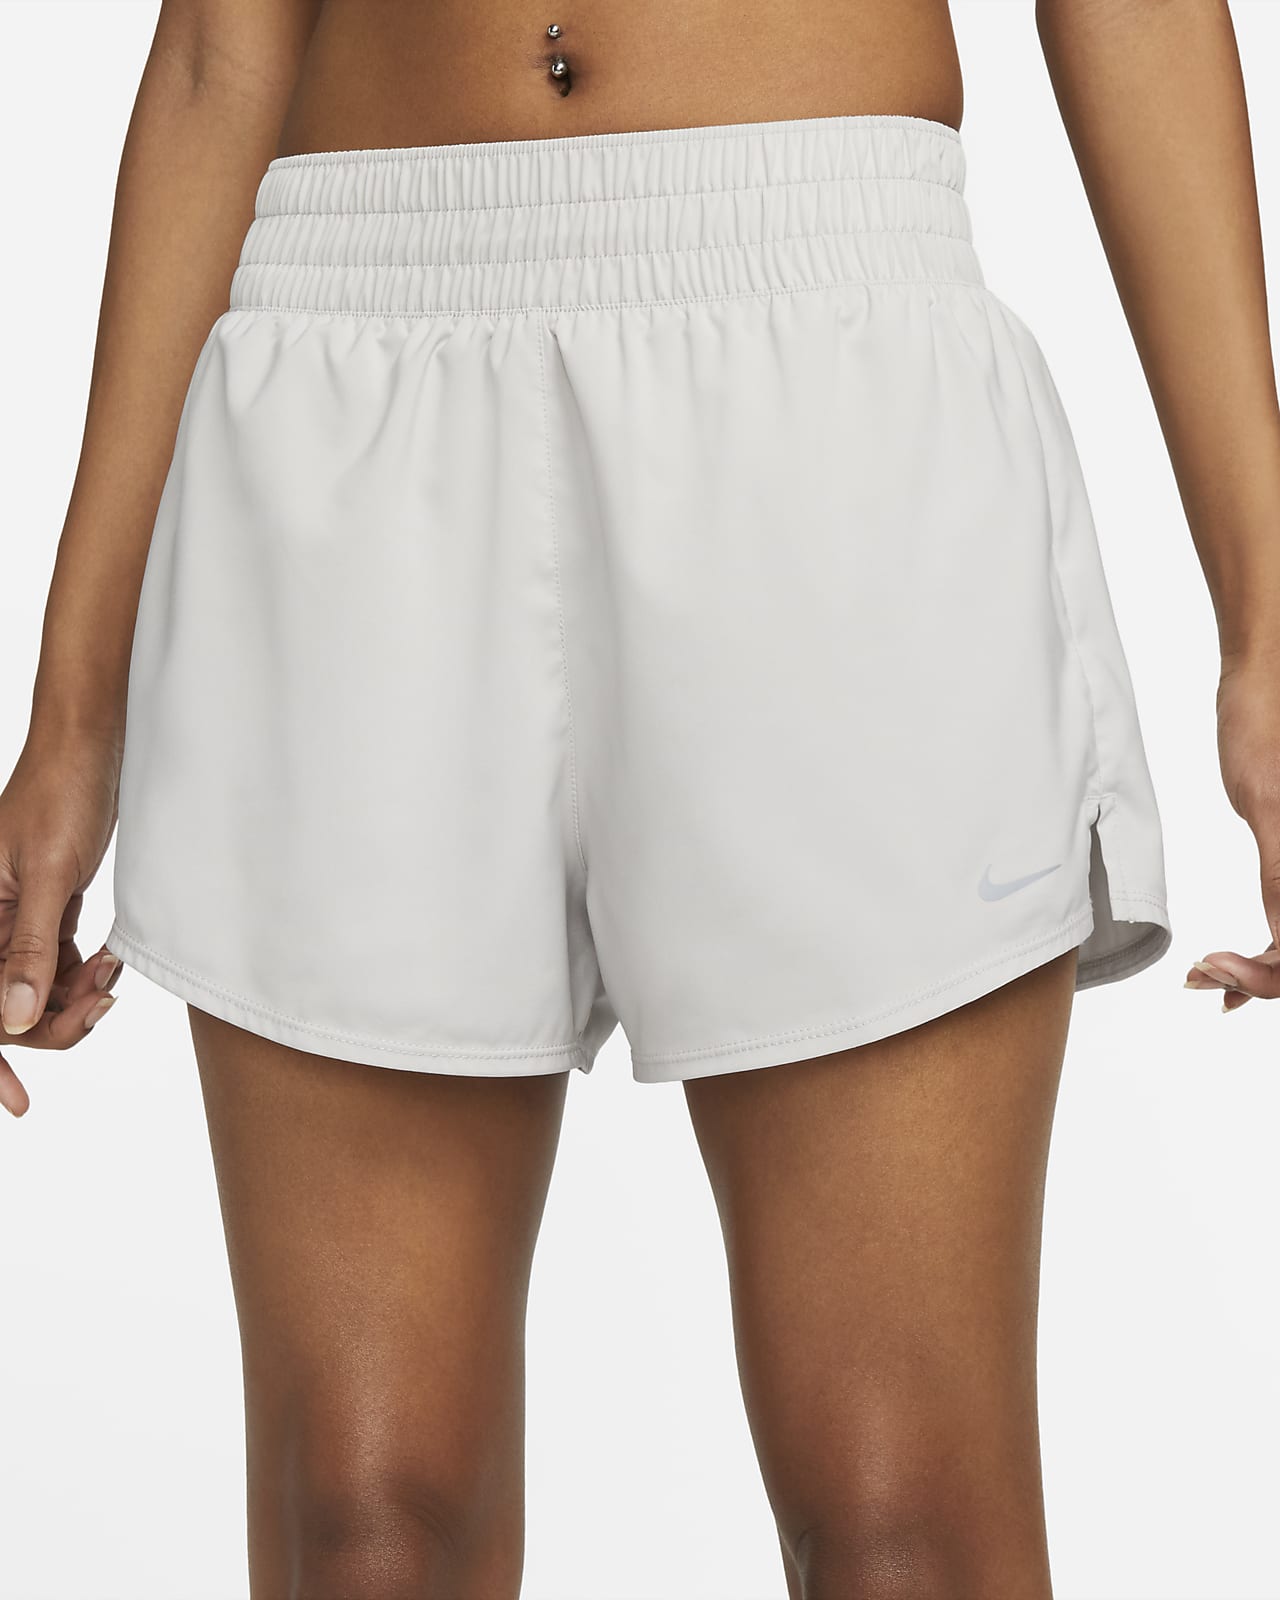 Nike Yoga Luxe High Waisted Shorts - Women's Size Small (DA0837-010)